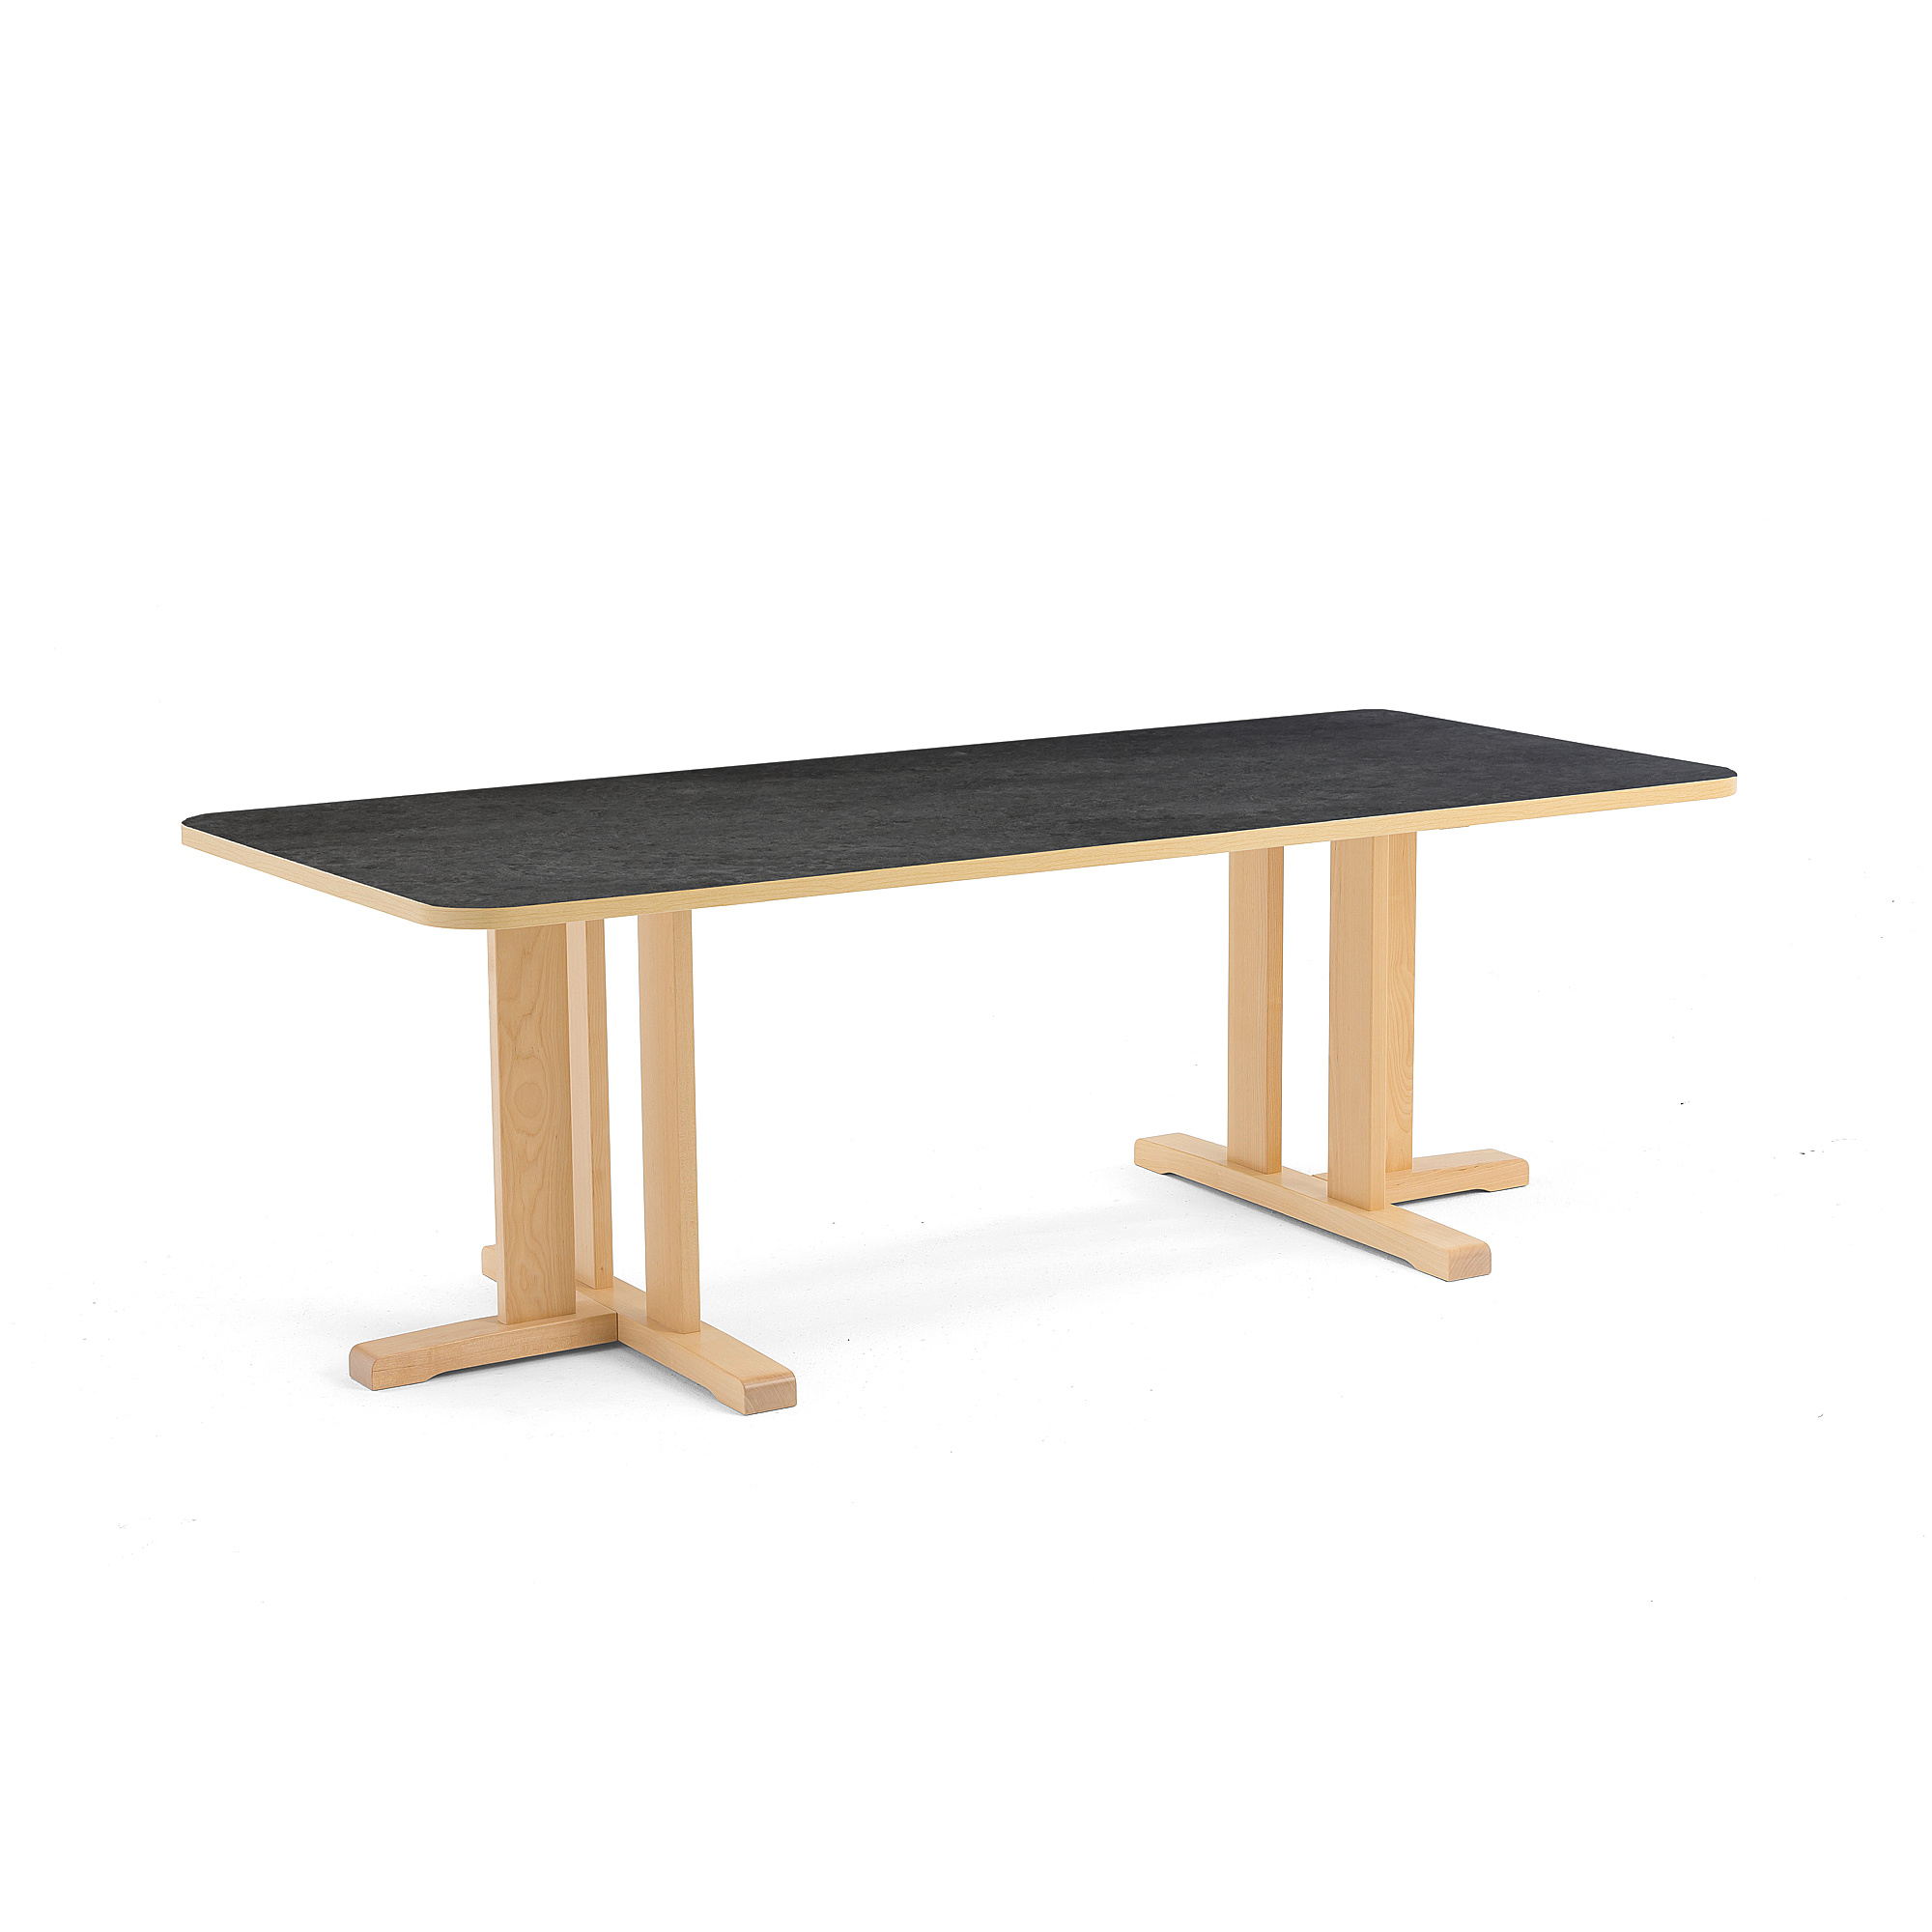 Stůl KUPOL, 1800x800x600 mm, obdélník, akustické linoleum, bříza/tmavě šedá